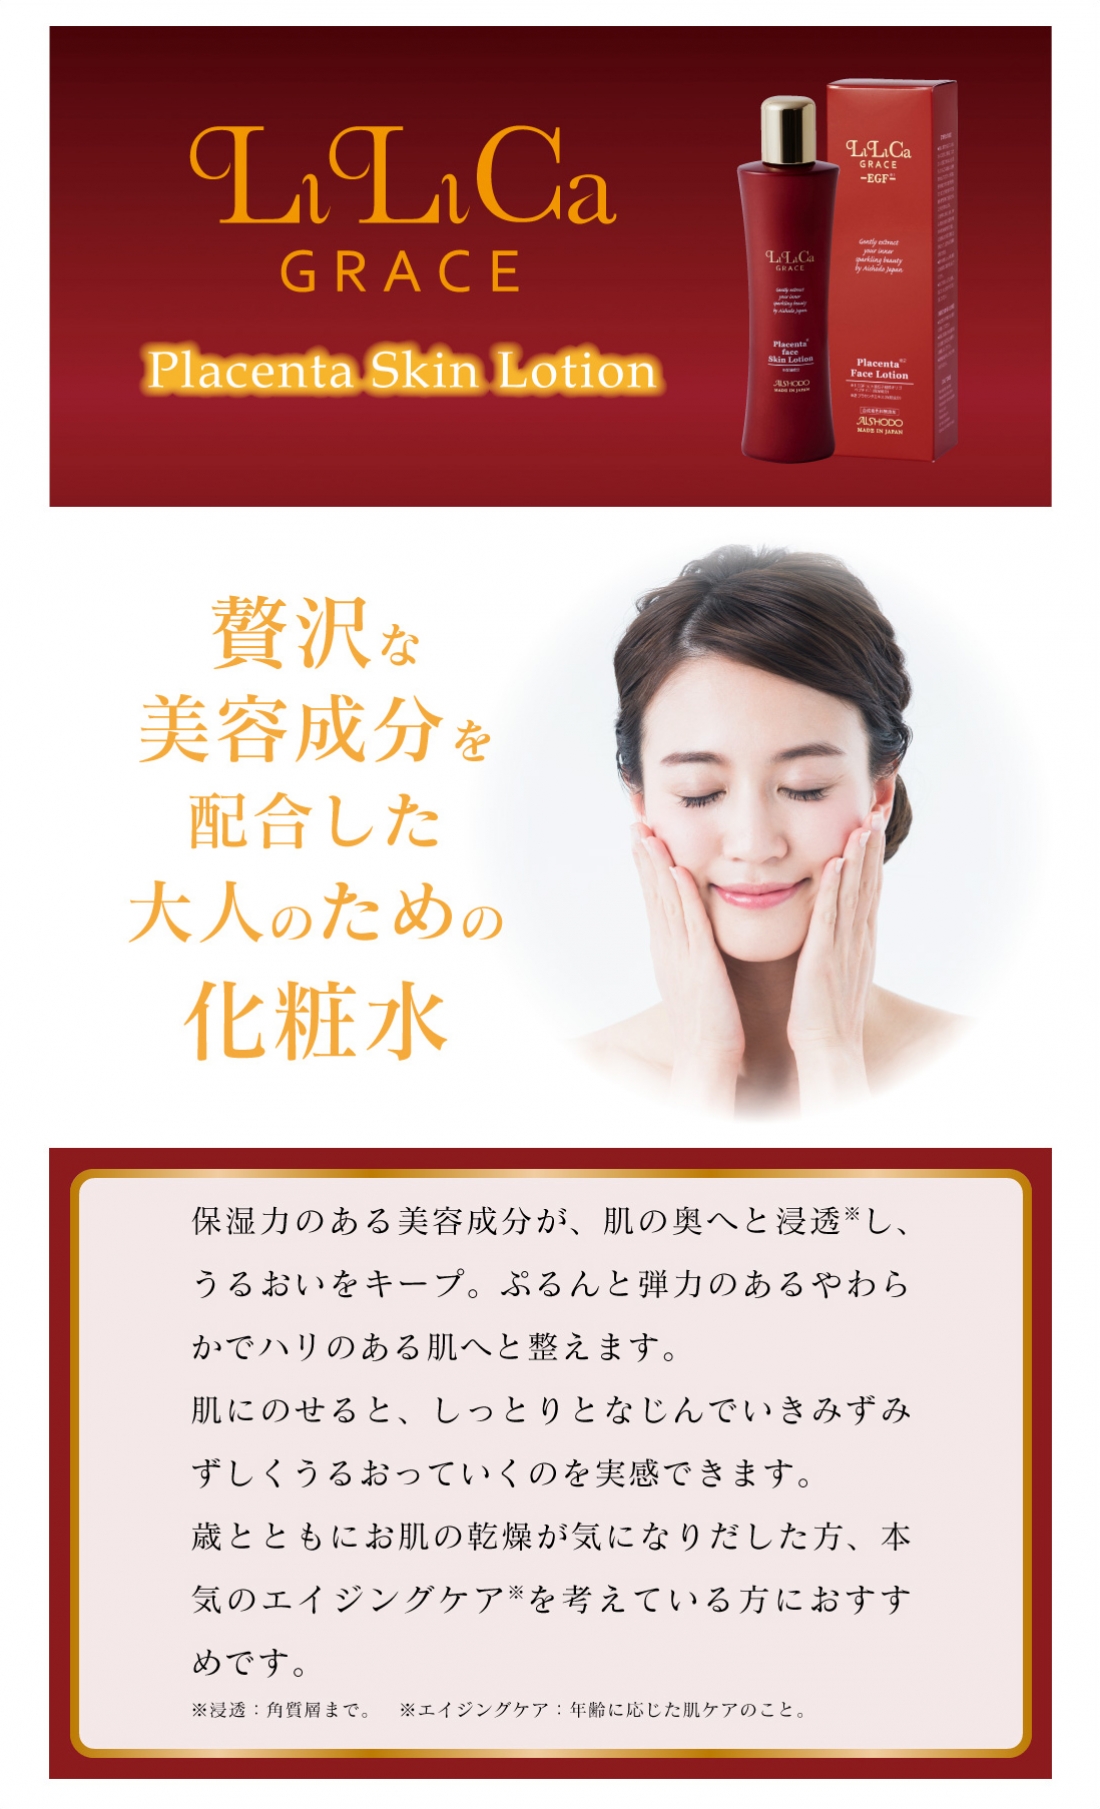 リリカグレースプラセンタスキンローション(化粧水)
Lilica Grace Placenta Skin Lotion